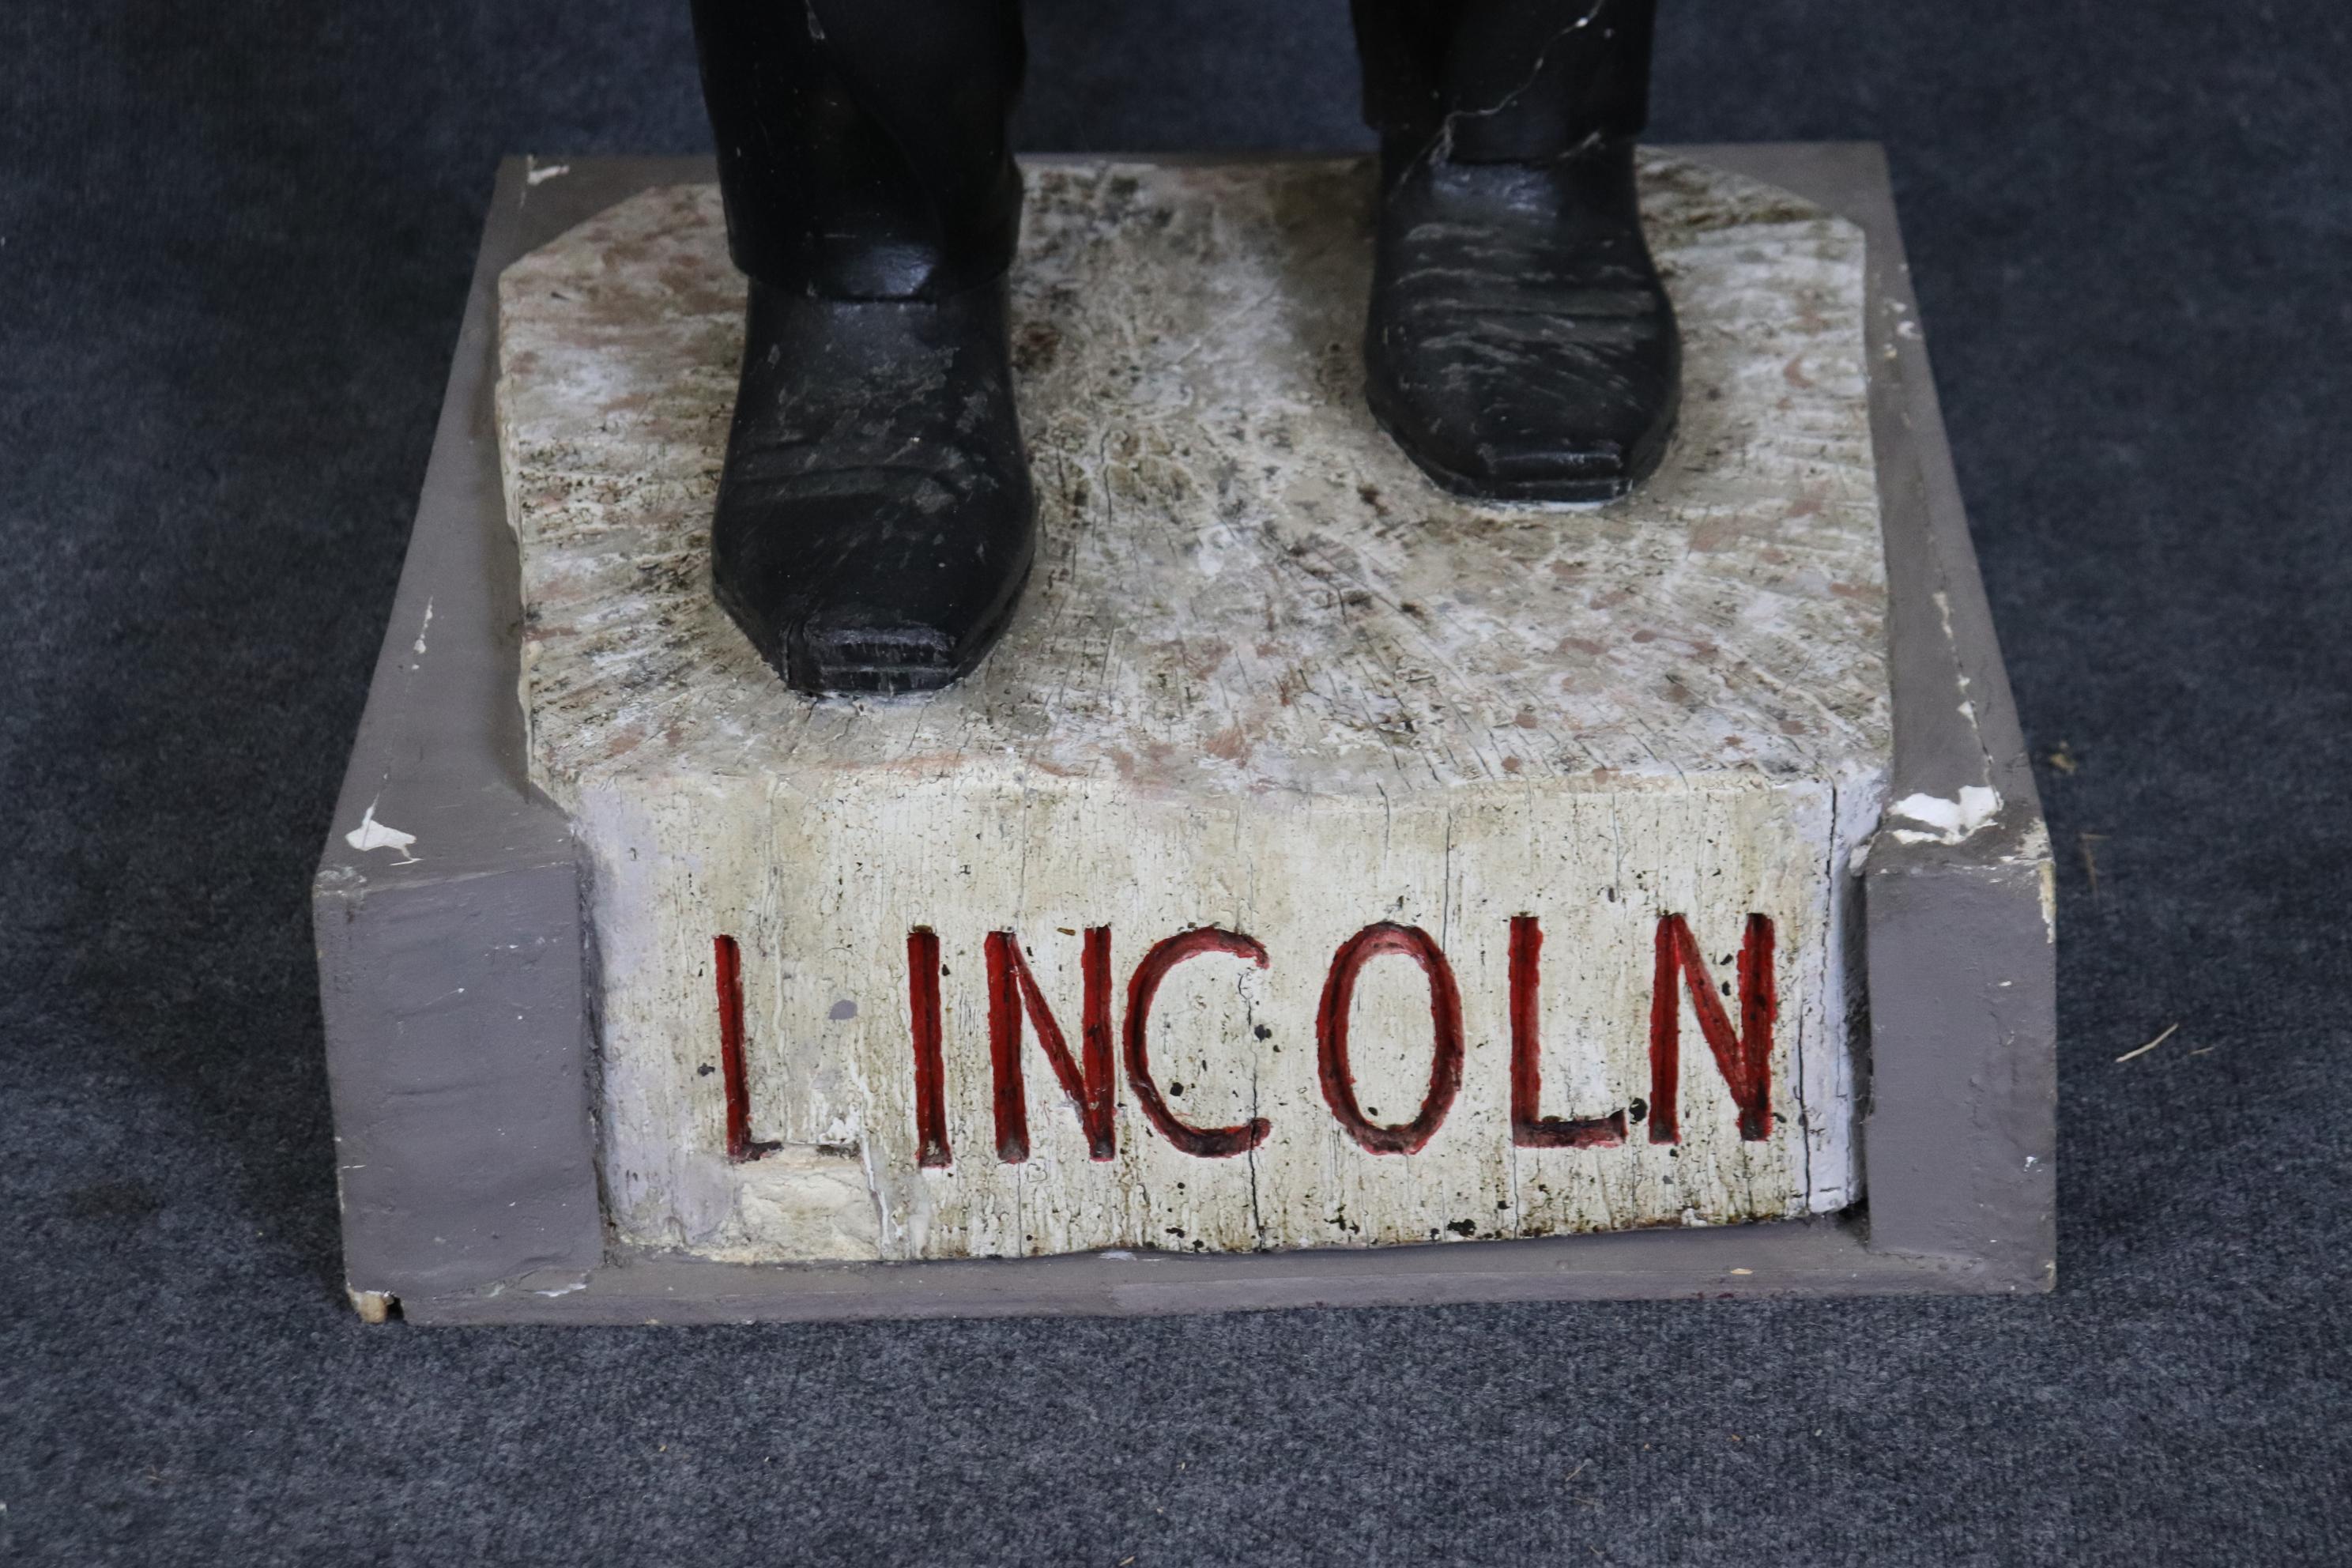 Dies ist eine sehr große, überlebensgroße, Volkskunst oder primitive geschnitzte Statue von Abraham Lincoln. Das Stück sieht aus, als sei es von einem naiven Künstler angefertigt worden. Es stammt aus einem Nachlass im Norden New Jerseys und stammt